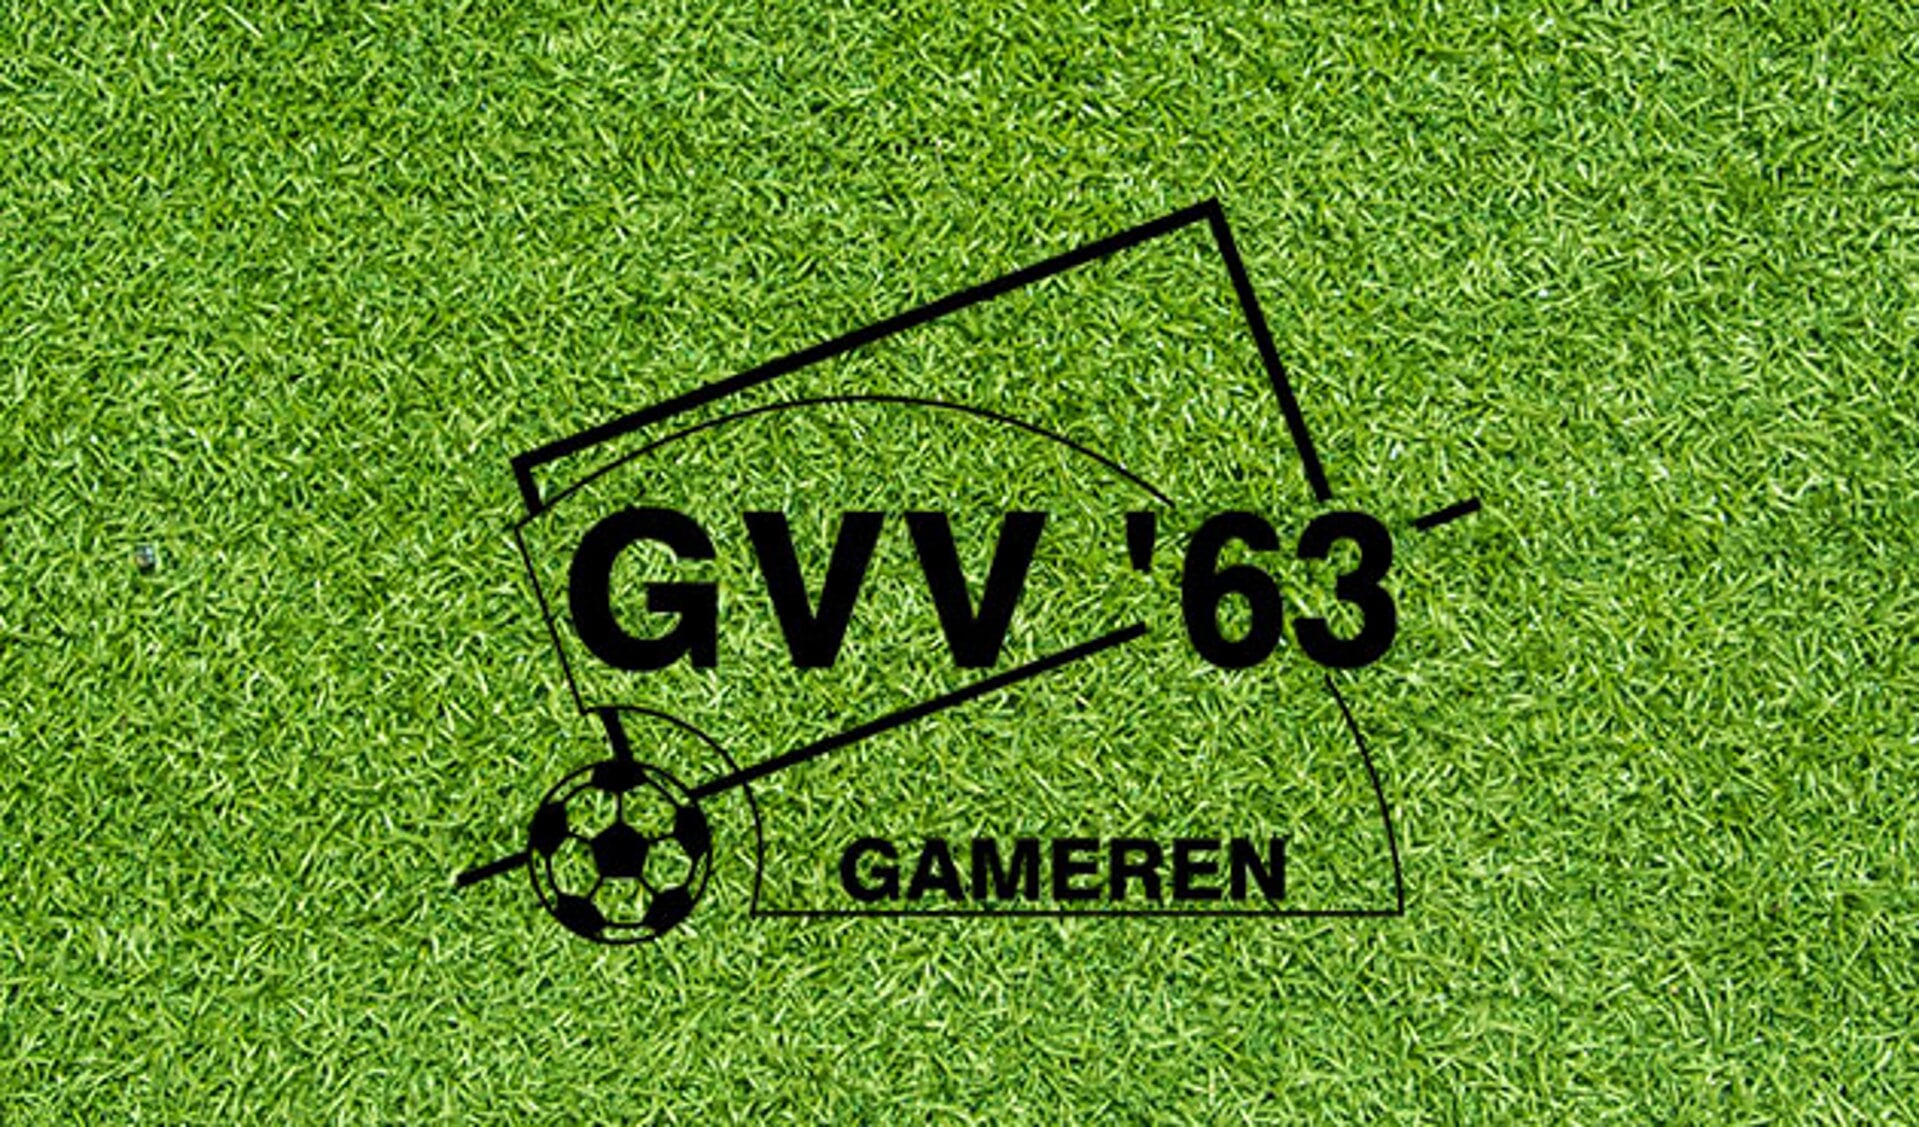 Vacature: GVV'63 zoekt hoofdtrainer